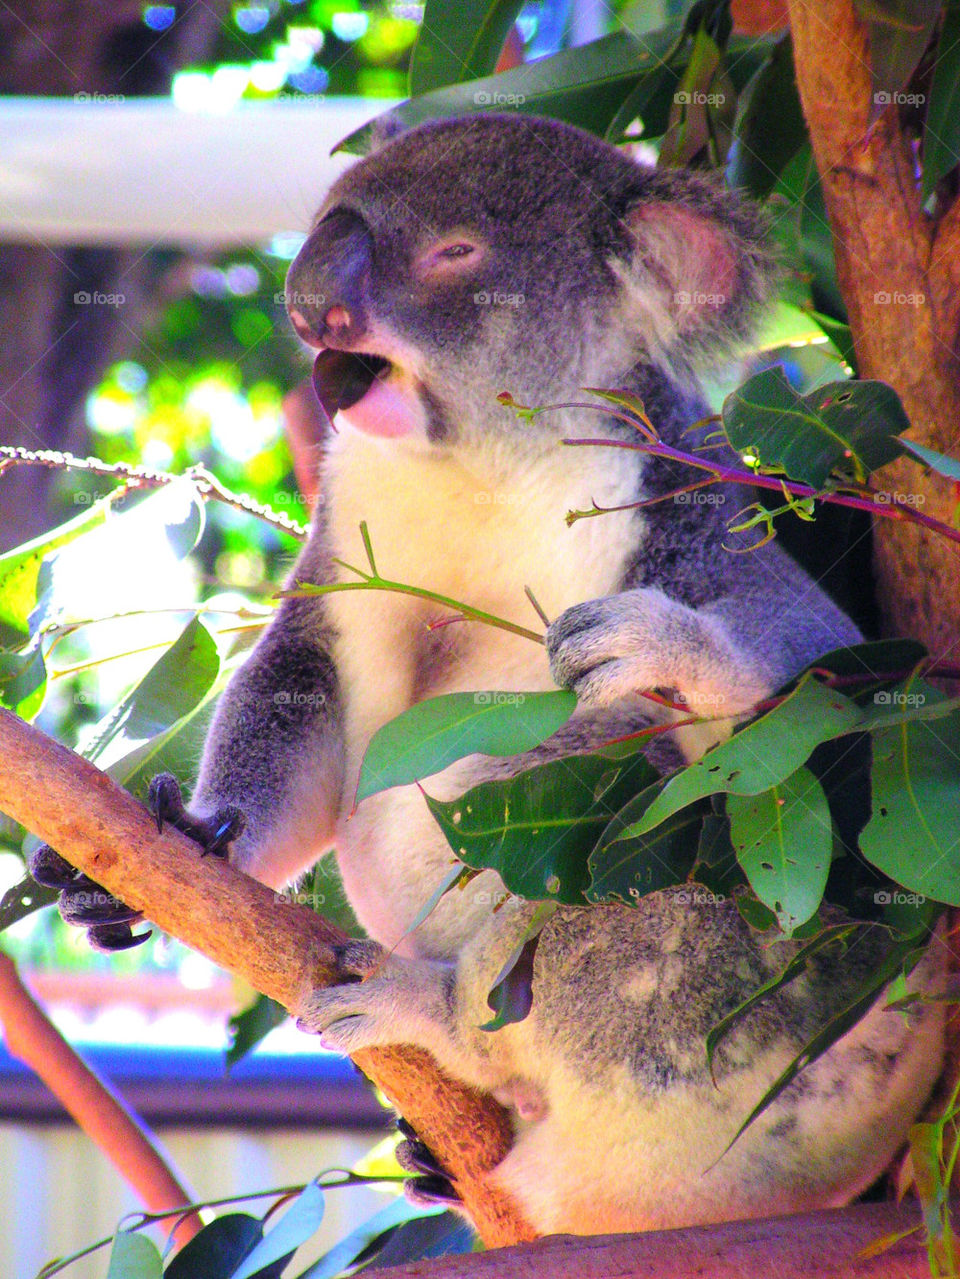 Koala lunch time.